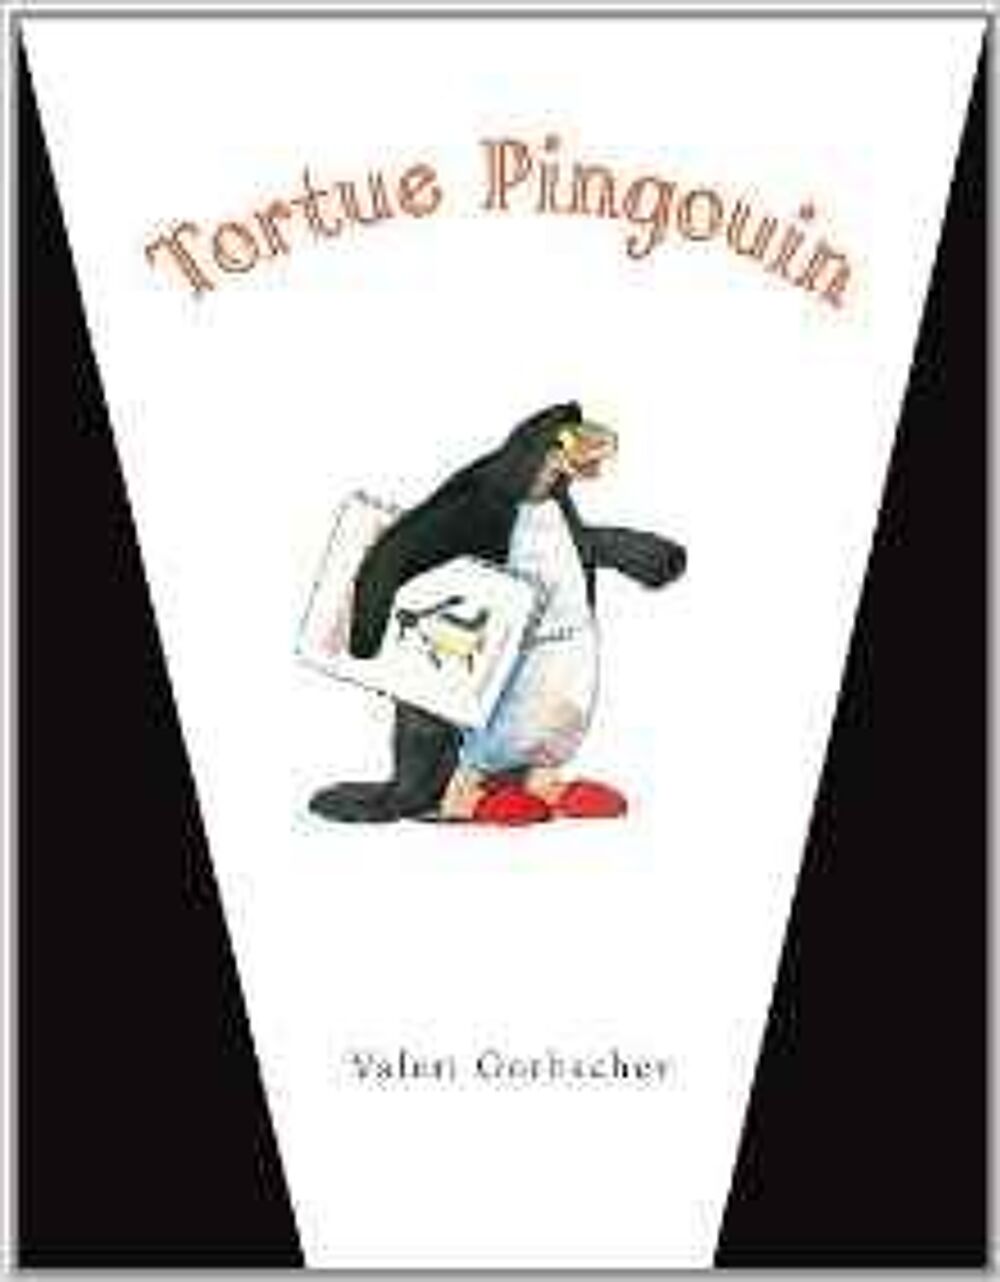 Tortue Pingouin de Valeri Gorbachev - Ecole des Loisirs Livres et BD